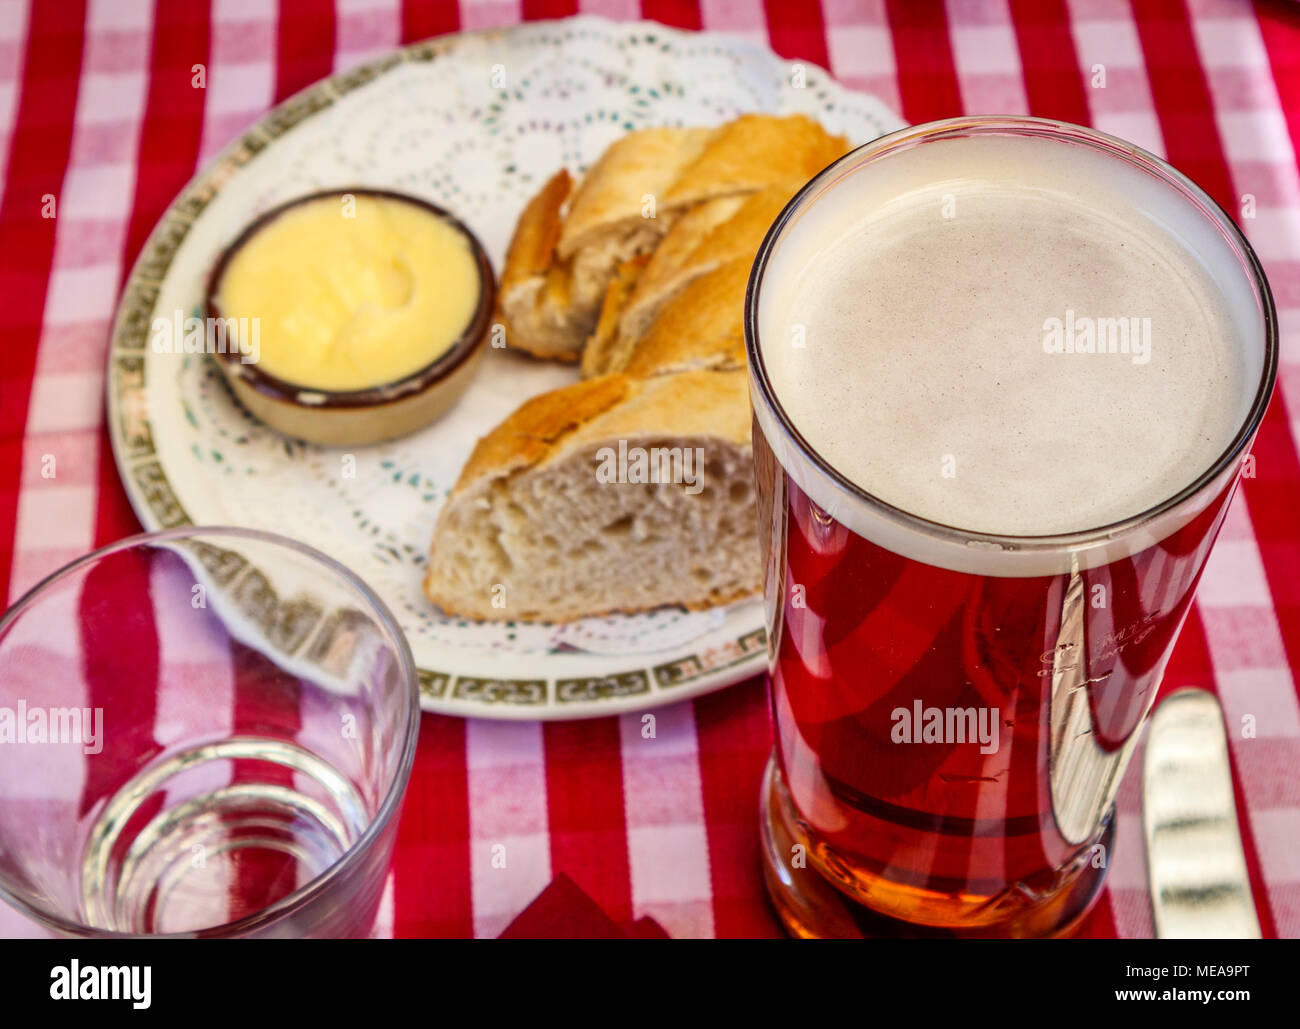 Repas dans un pub typique de la buvette : une pinte de bière dans un verre recto verso avec pain et beurre rouge et blanc sur une nappe vichy vérifié Banque D'Images